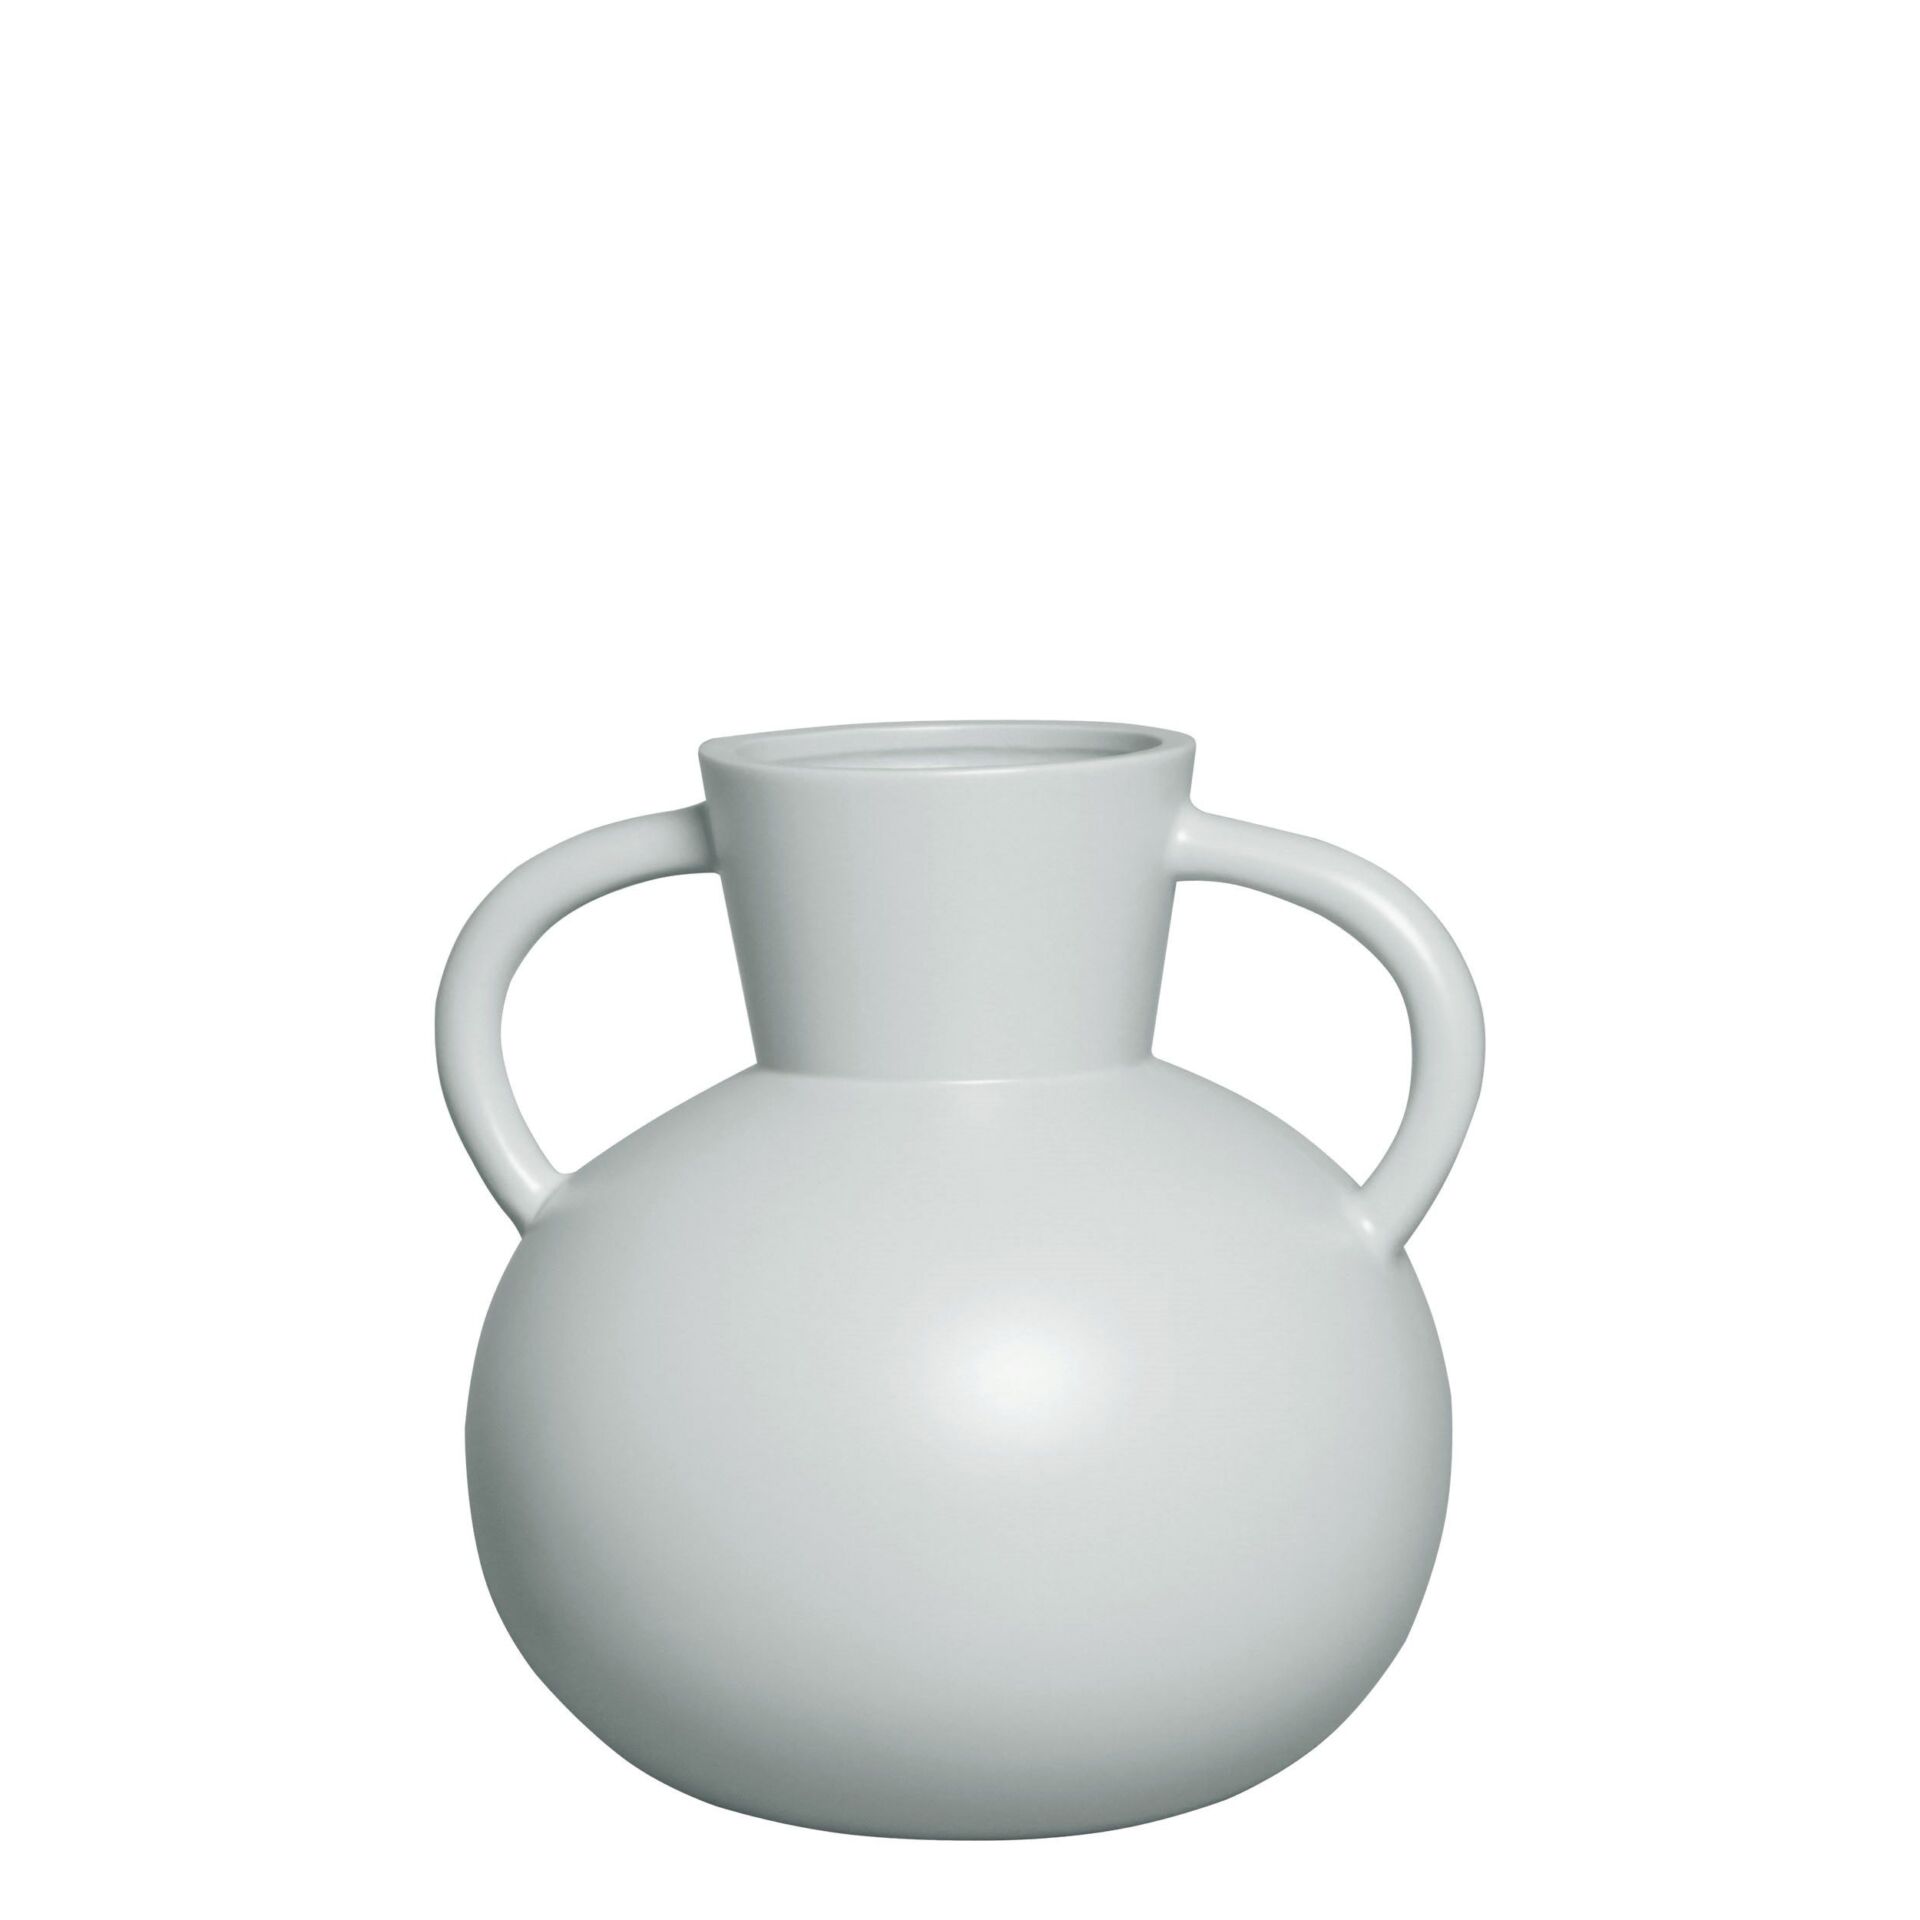 Vaso Ceramica Off White com Alça Baixo Cod 8974